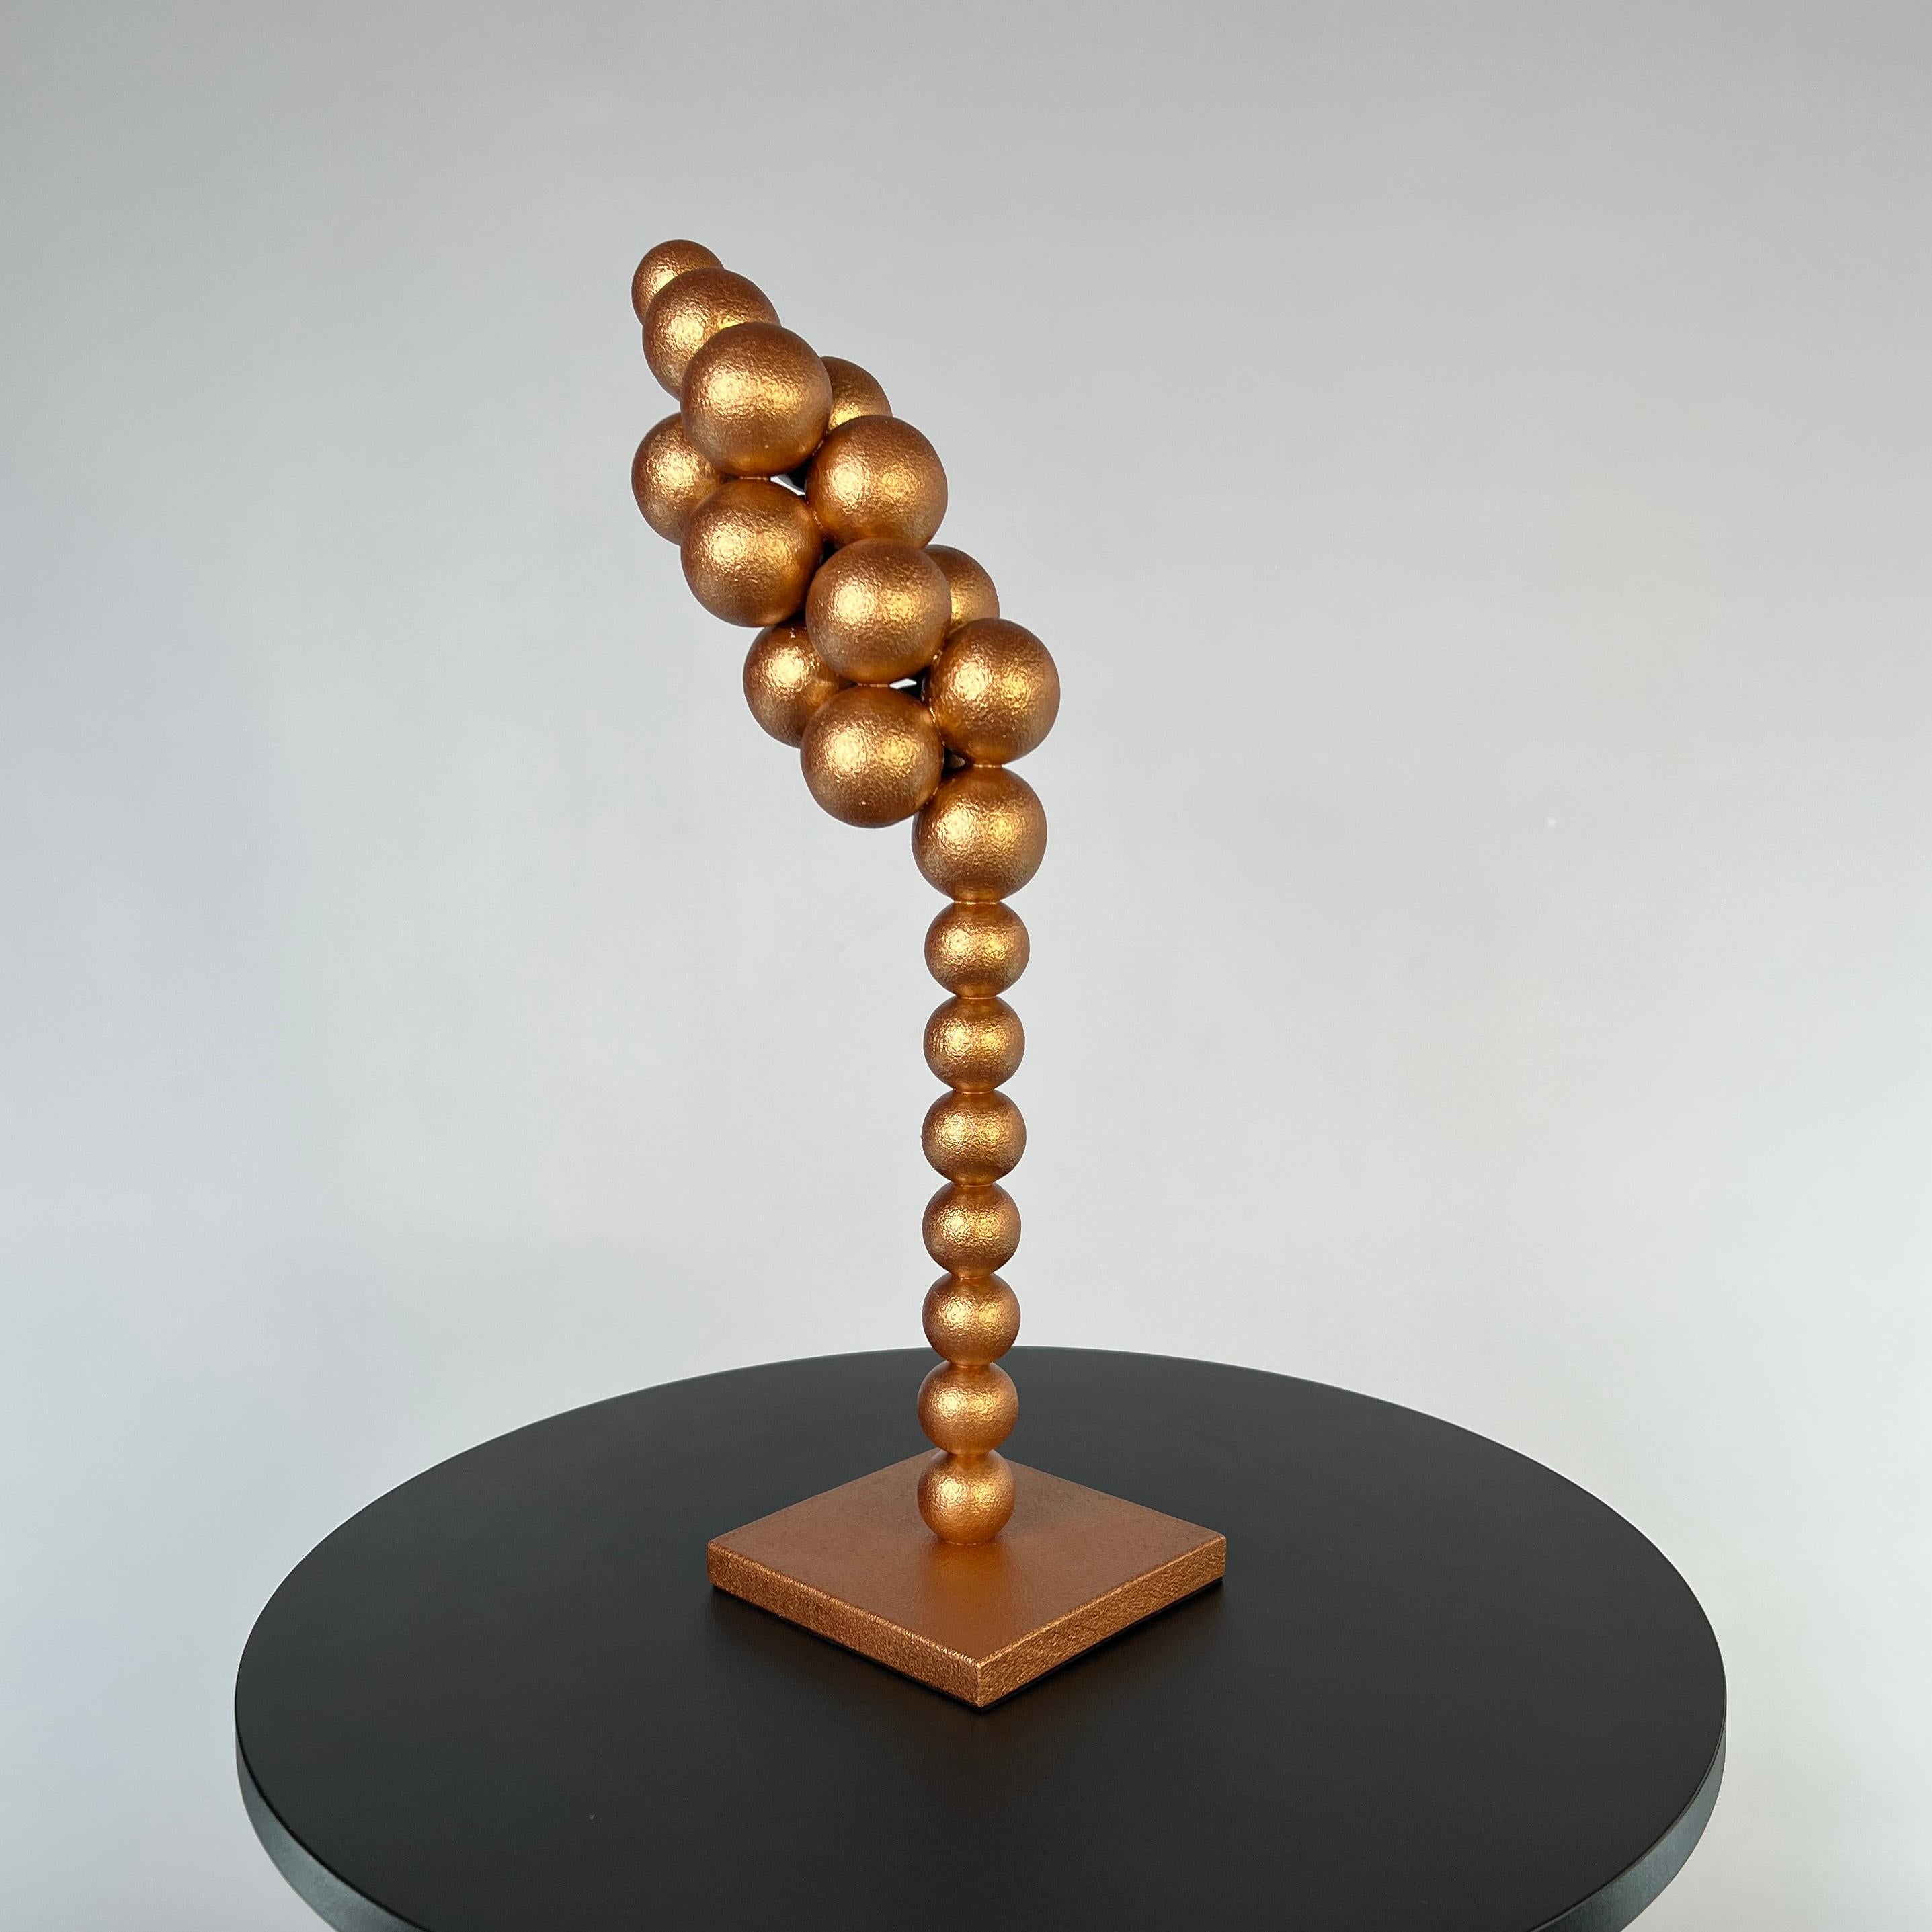 Spikelet sculpture - Sculpture by IRENA TONE